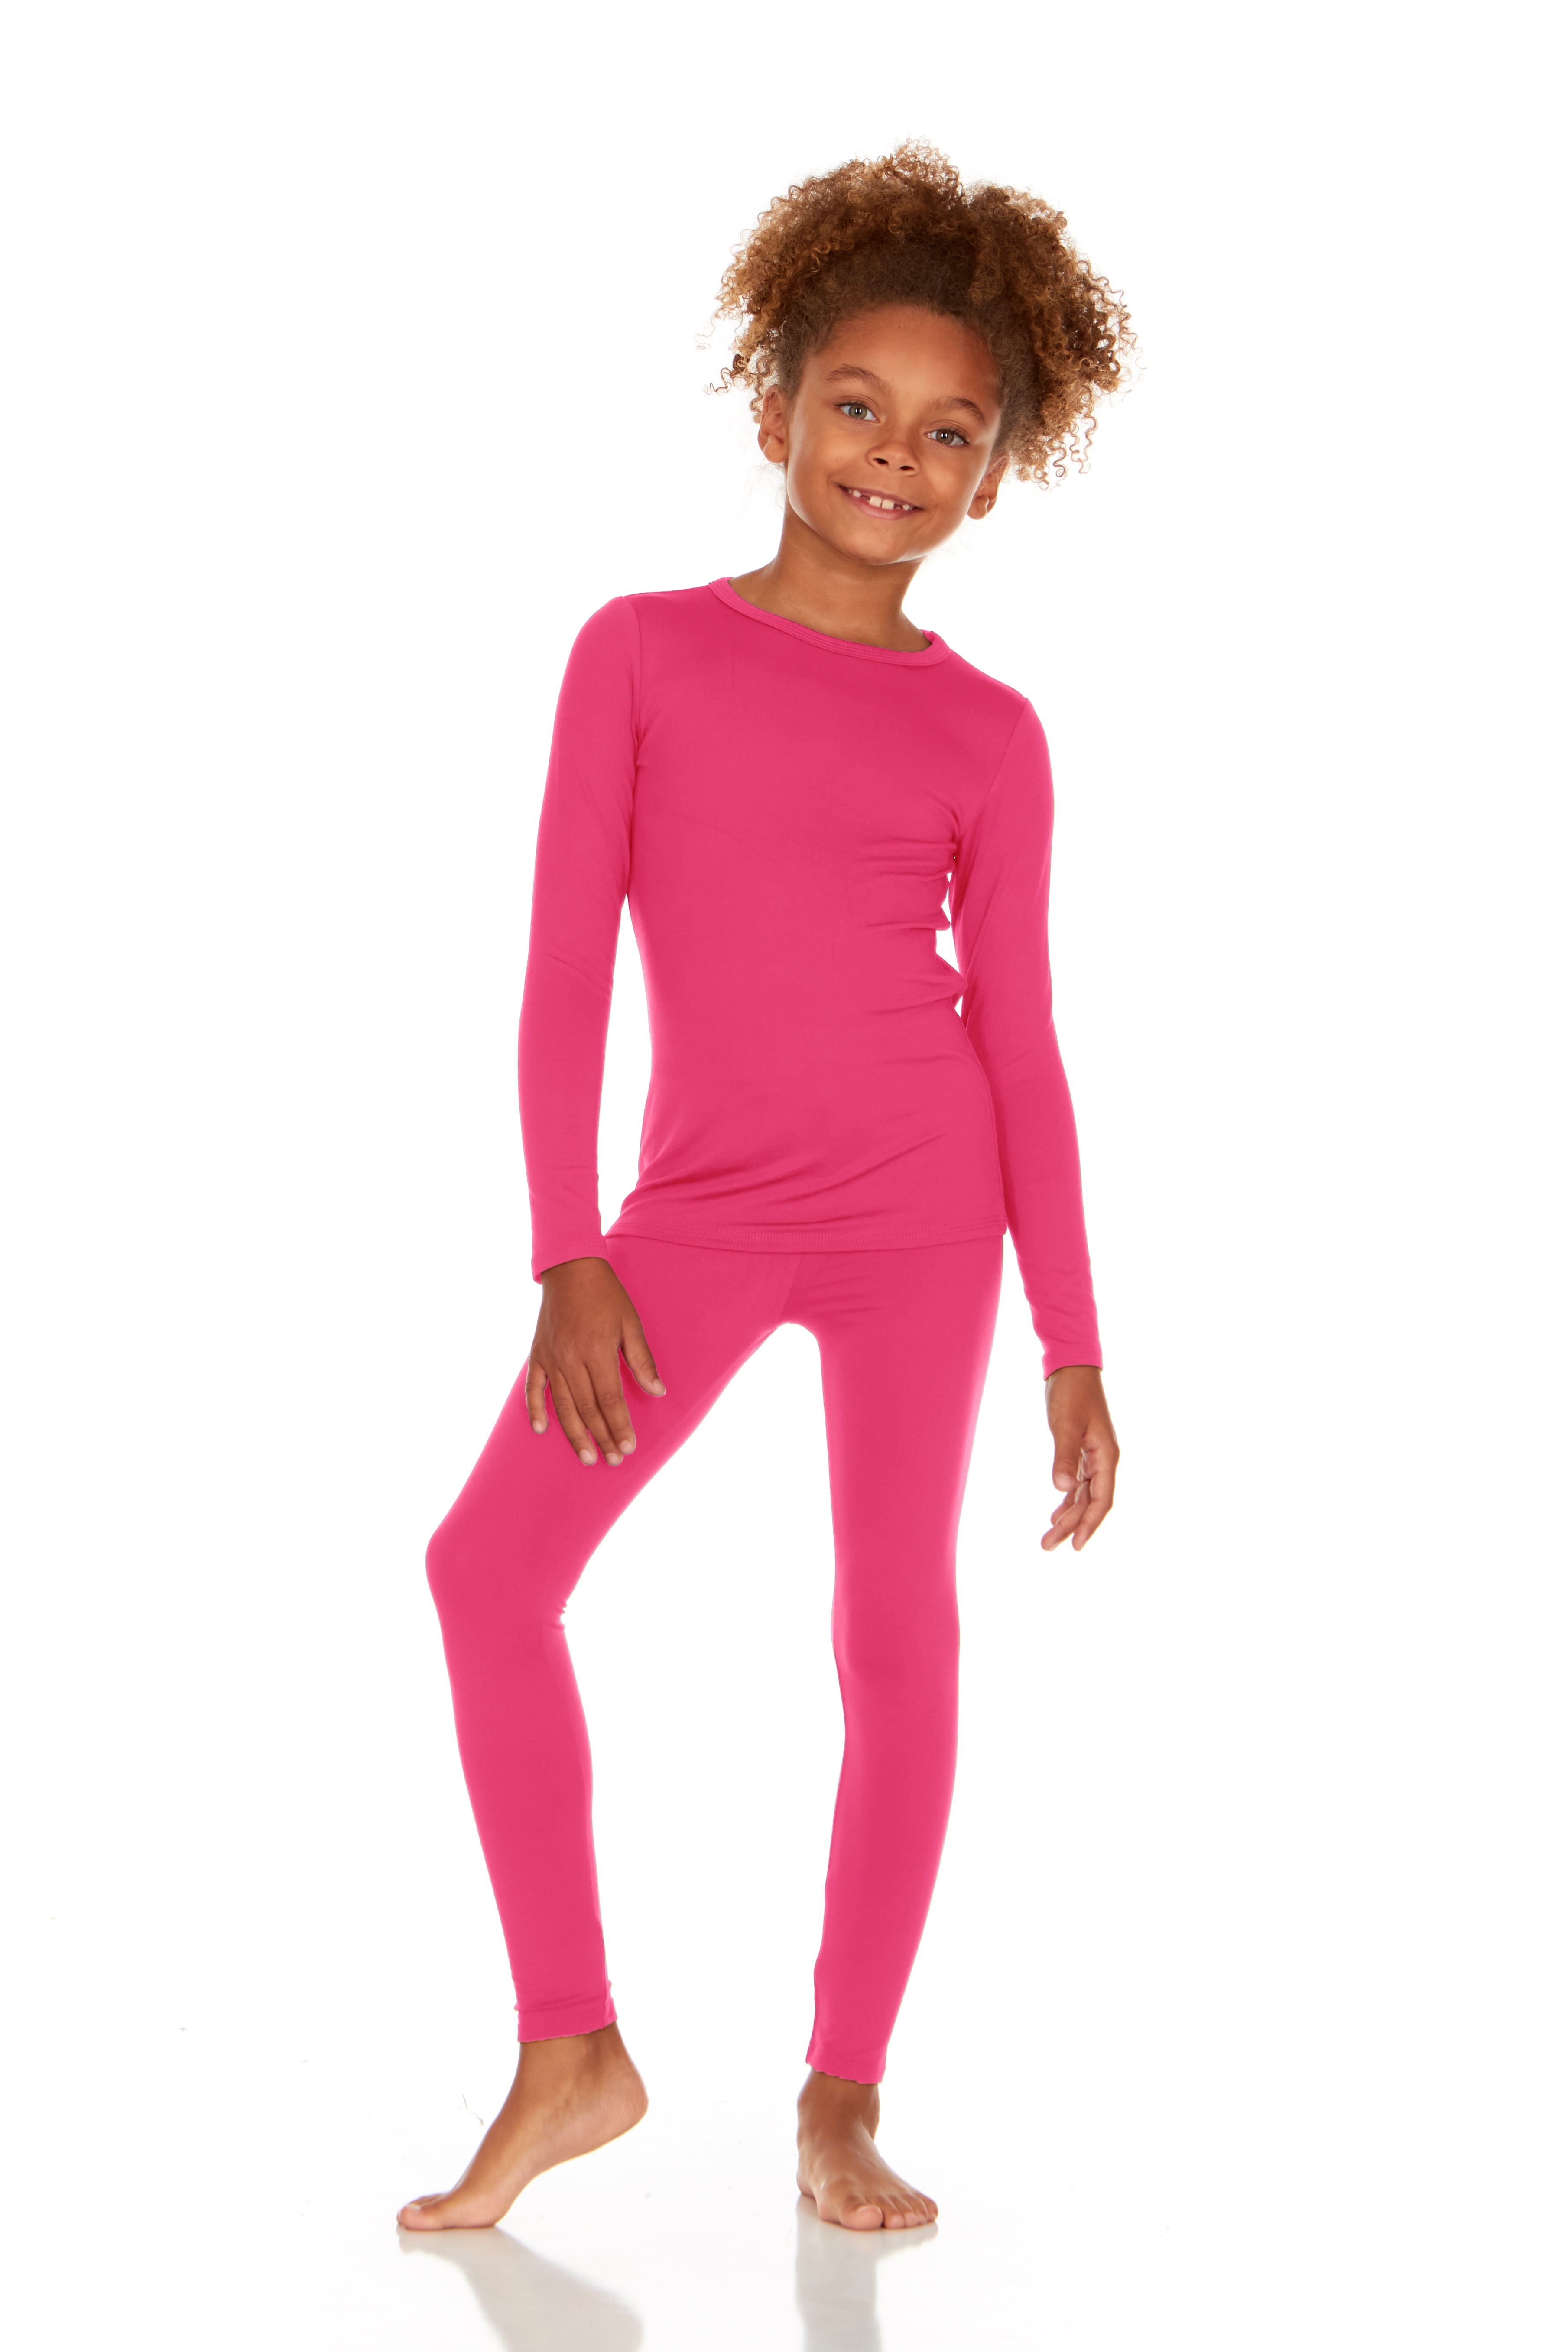 Thermajane Thermal Underwear for Girls Long John Set Kids (Pink, Large)